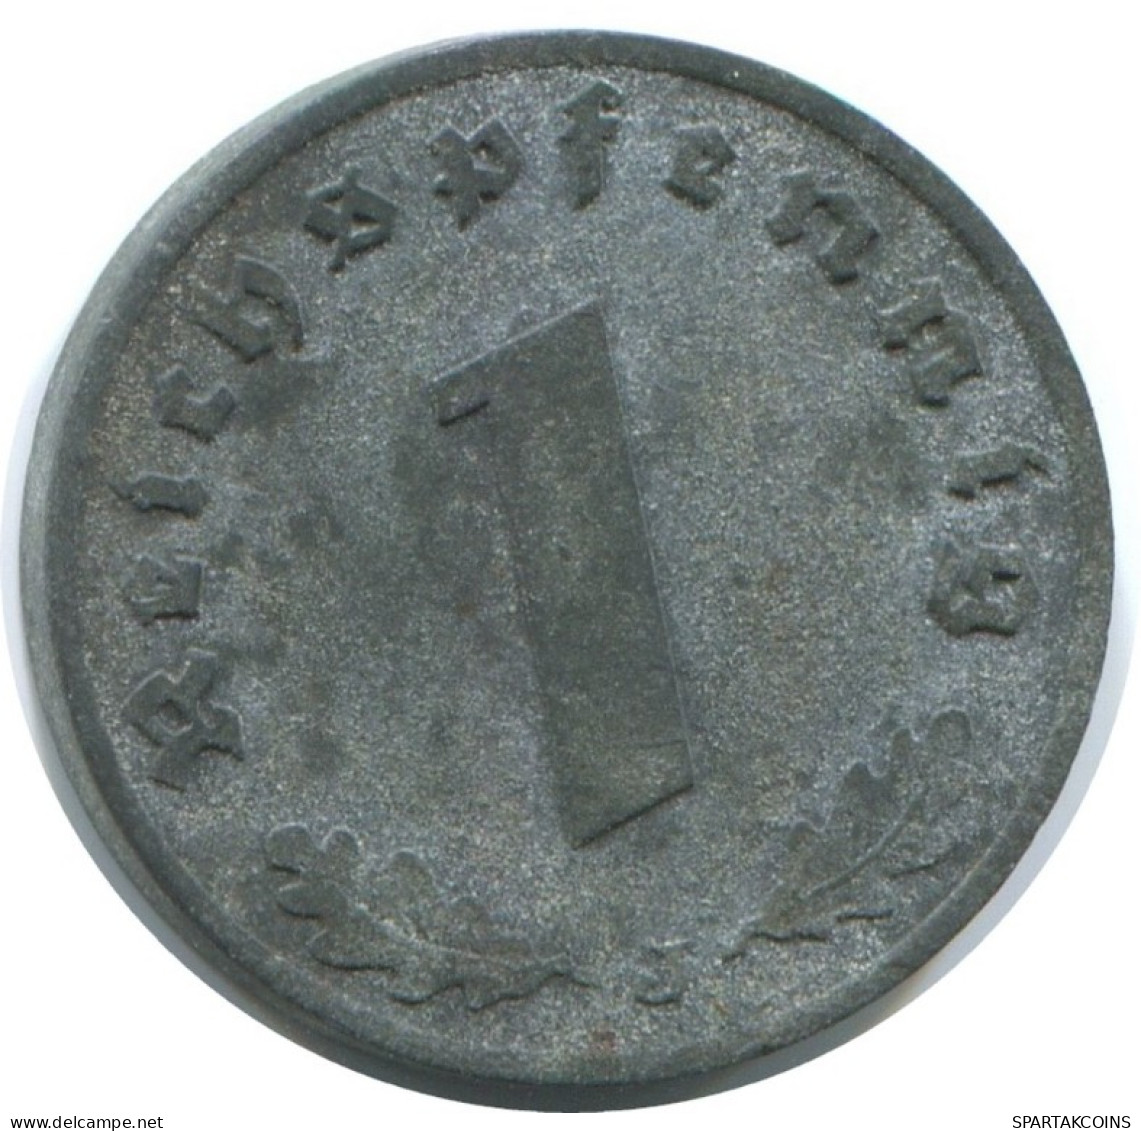 1 REICHSPFENNIG 1942 J ALEMANIA Moneda GERMANY #AE257.E.A - 1 Reichspfennig